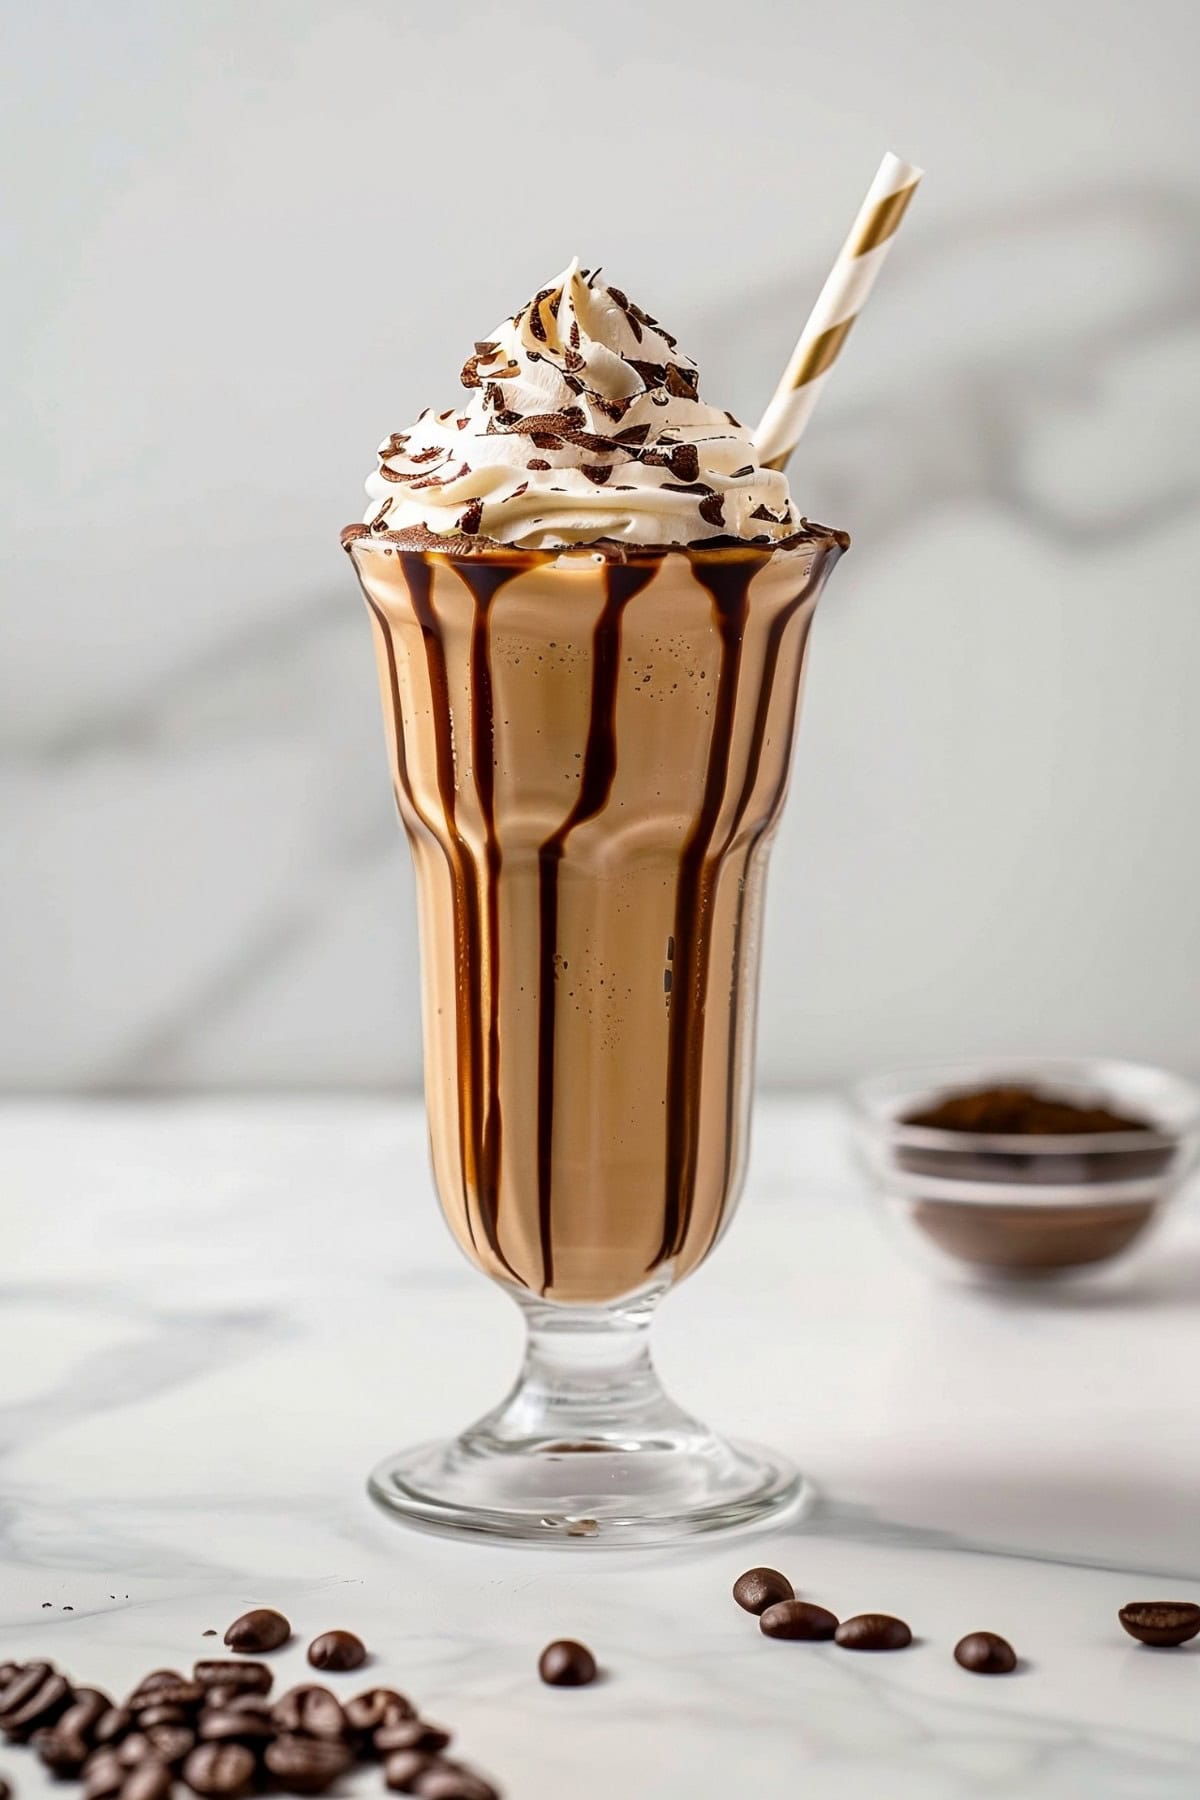 Refreshing coffee milkshake with whipped cream and chocolate sauce